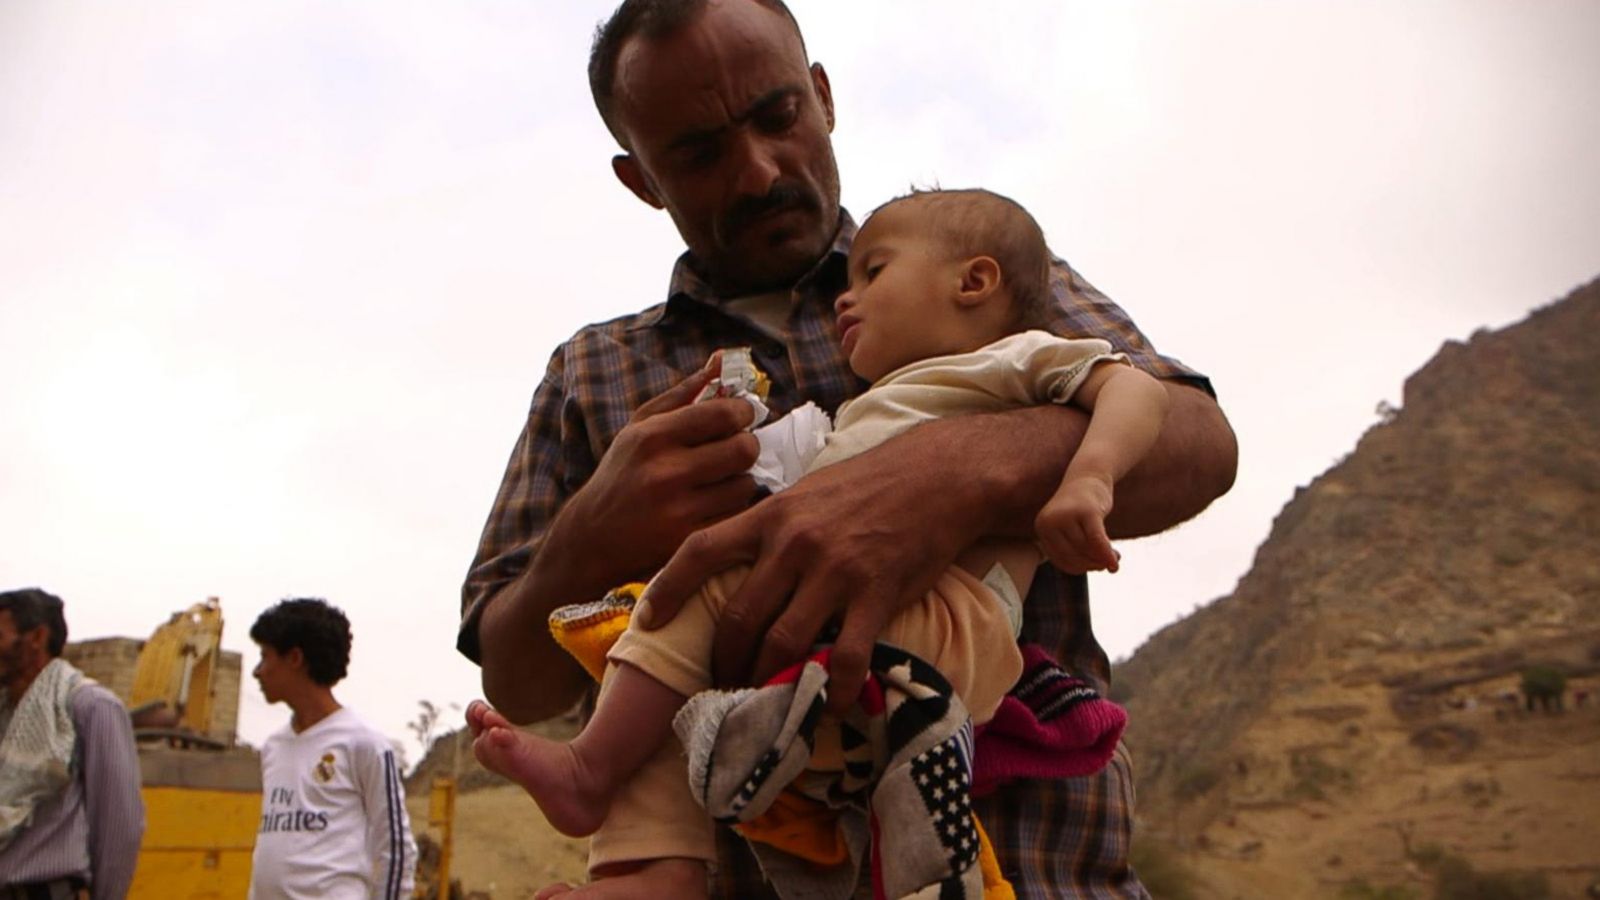 Î‘Ï€Î¿Ï„Î­Î»ÎµÏƒÎ¼Î± ÎµÎ¹ÎºÏŒÎ½Î±Ï‚ Î³Î¹Î± UN agency warns time running out to prevent Yemen famine